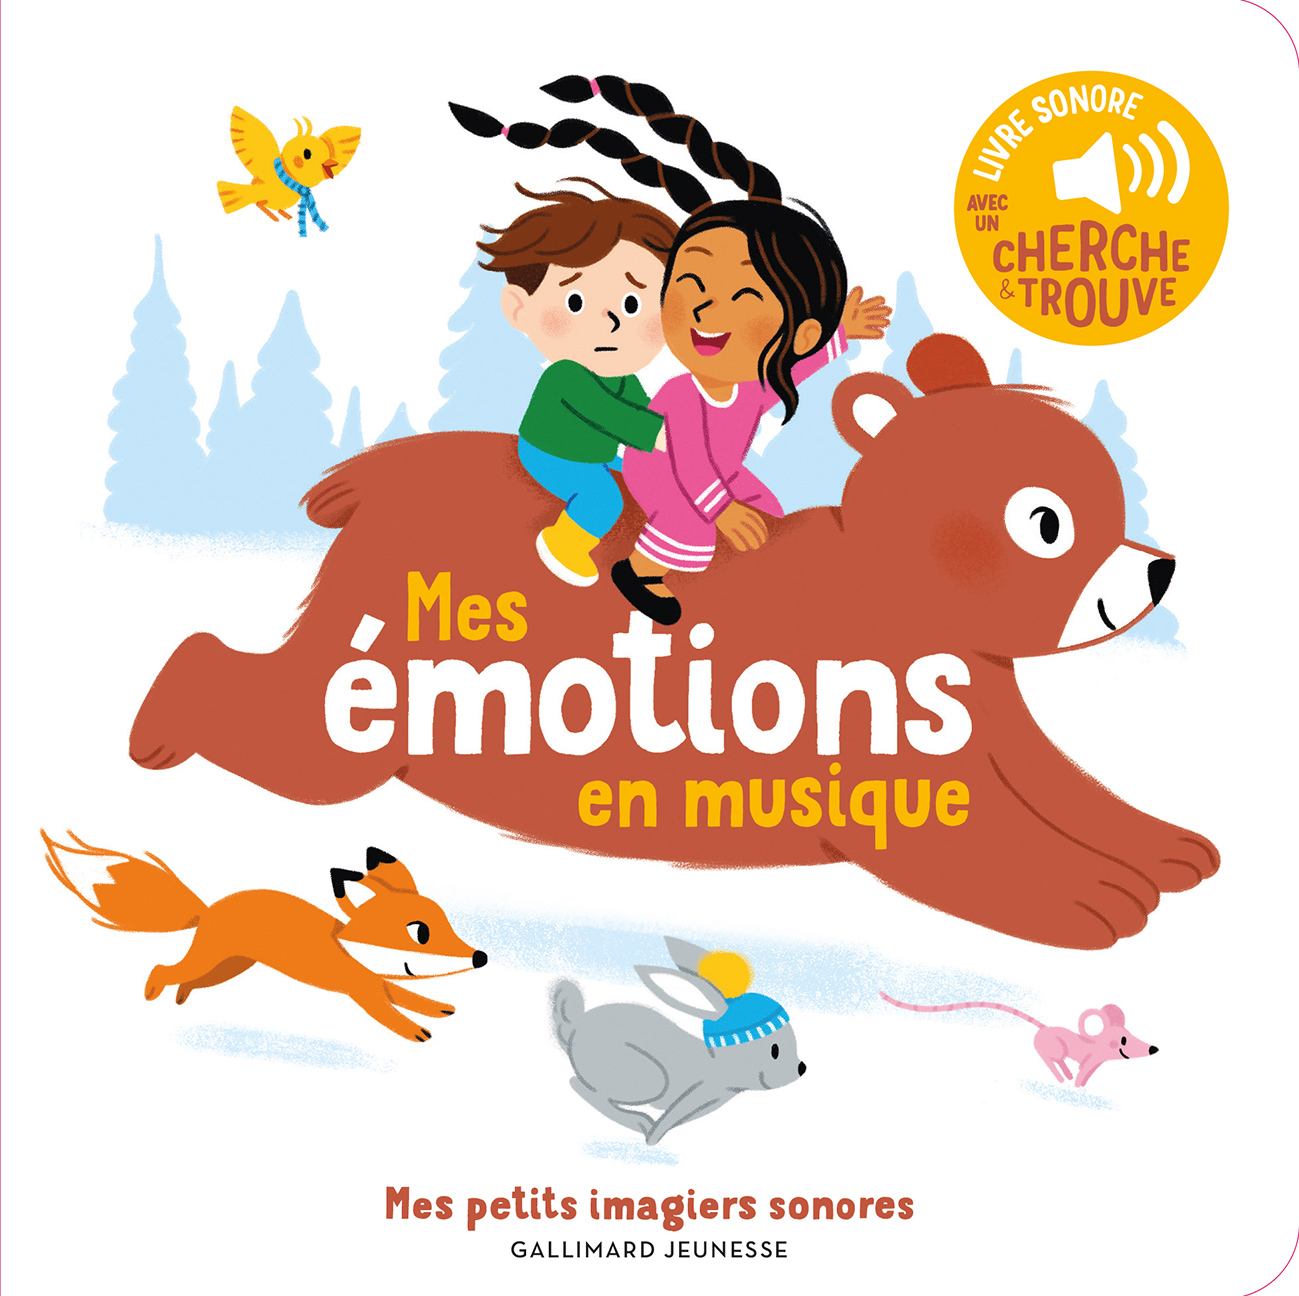 Livre sonore bébé Hachette - Livres avec des sons pour enfants